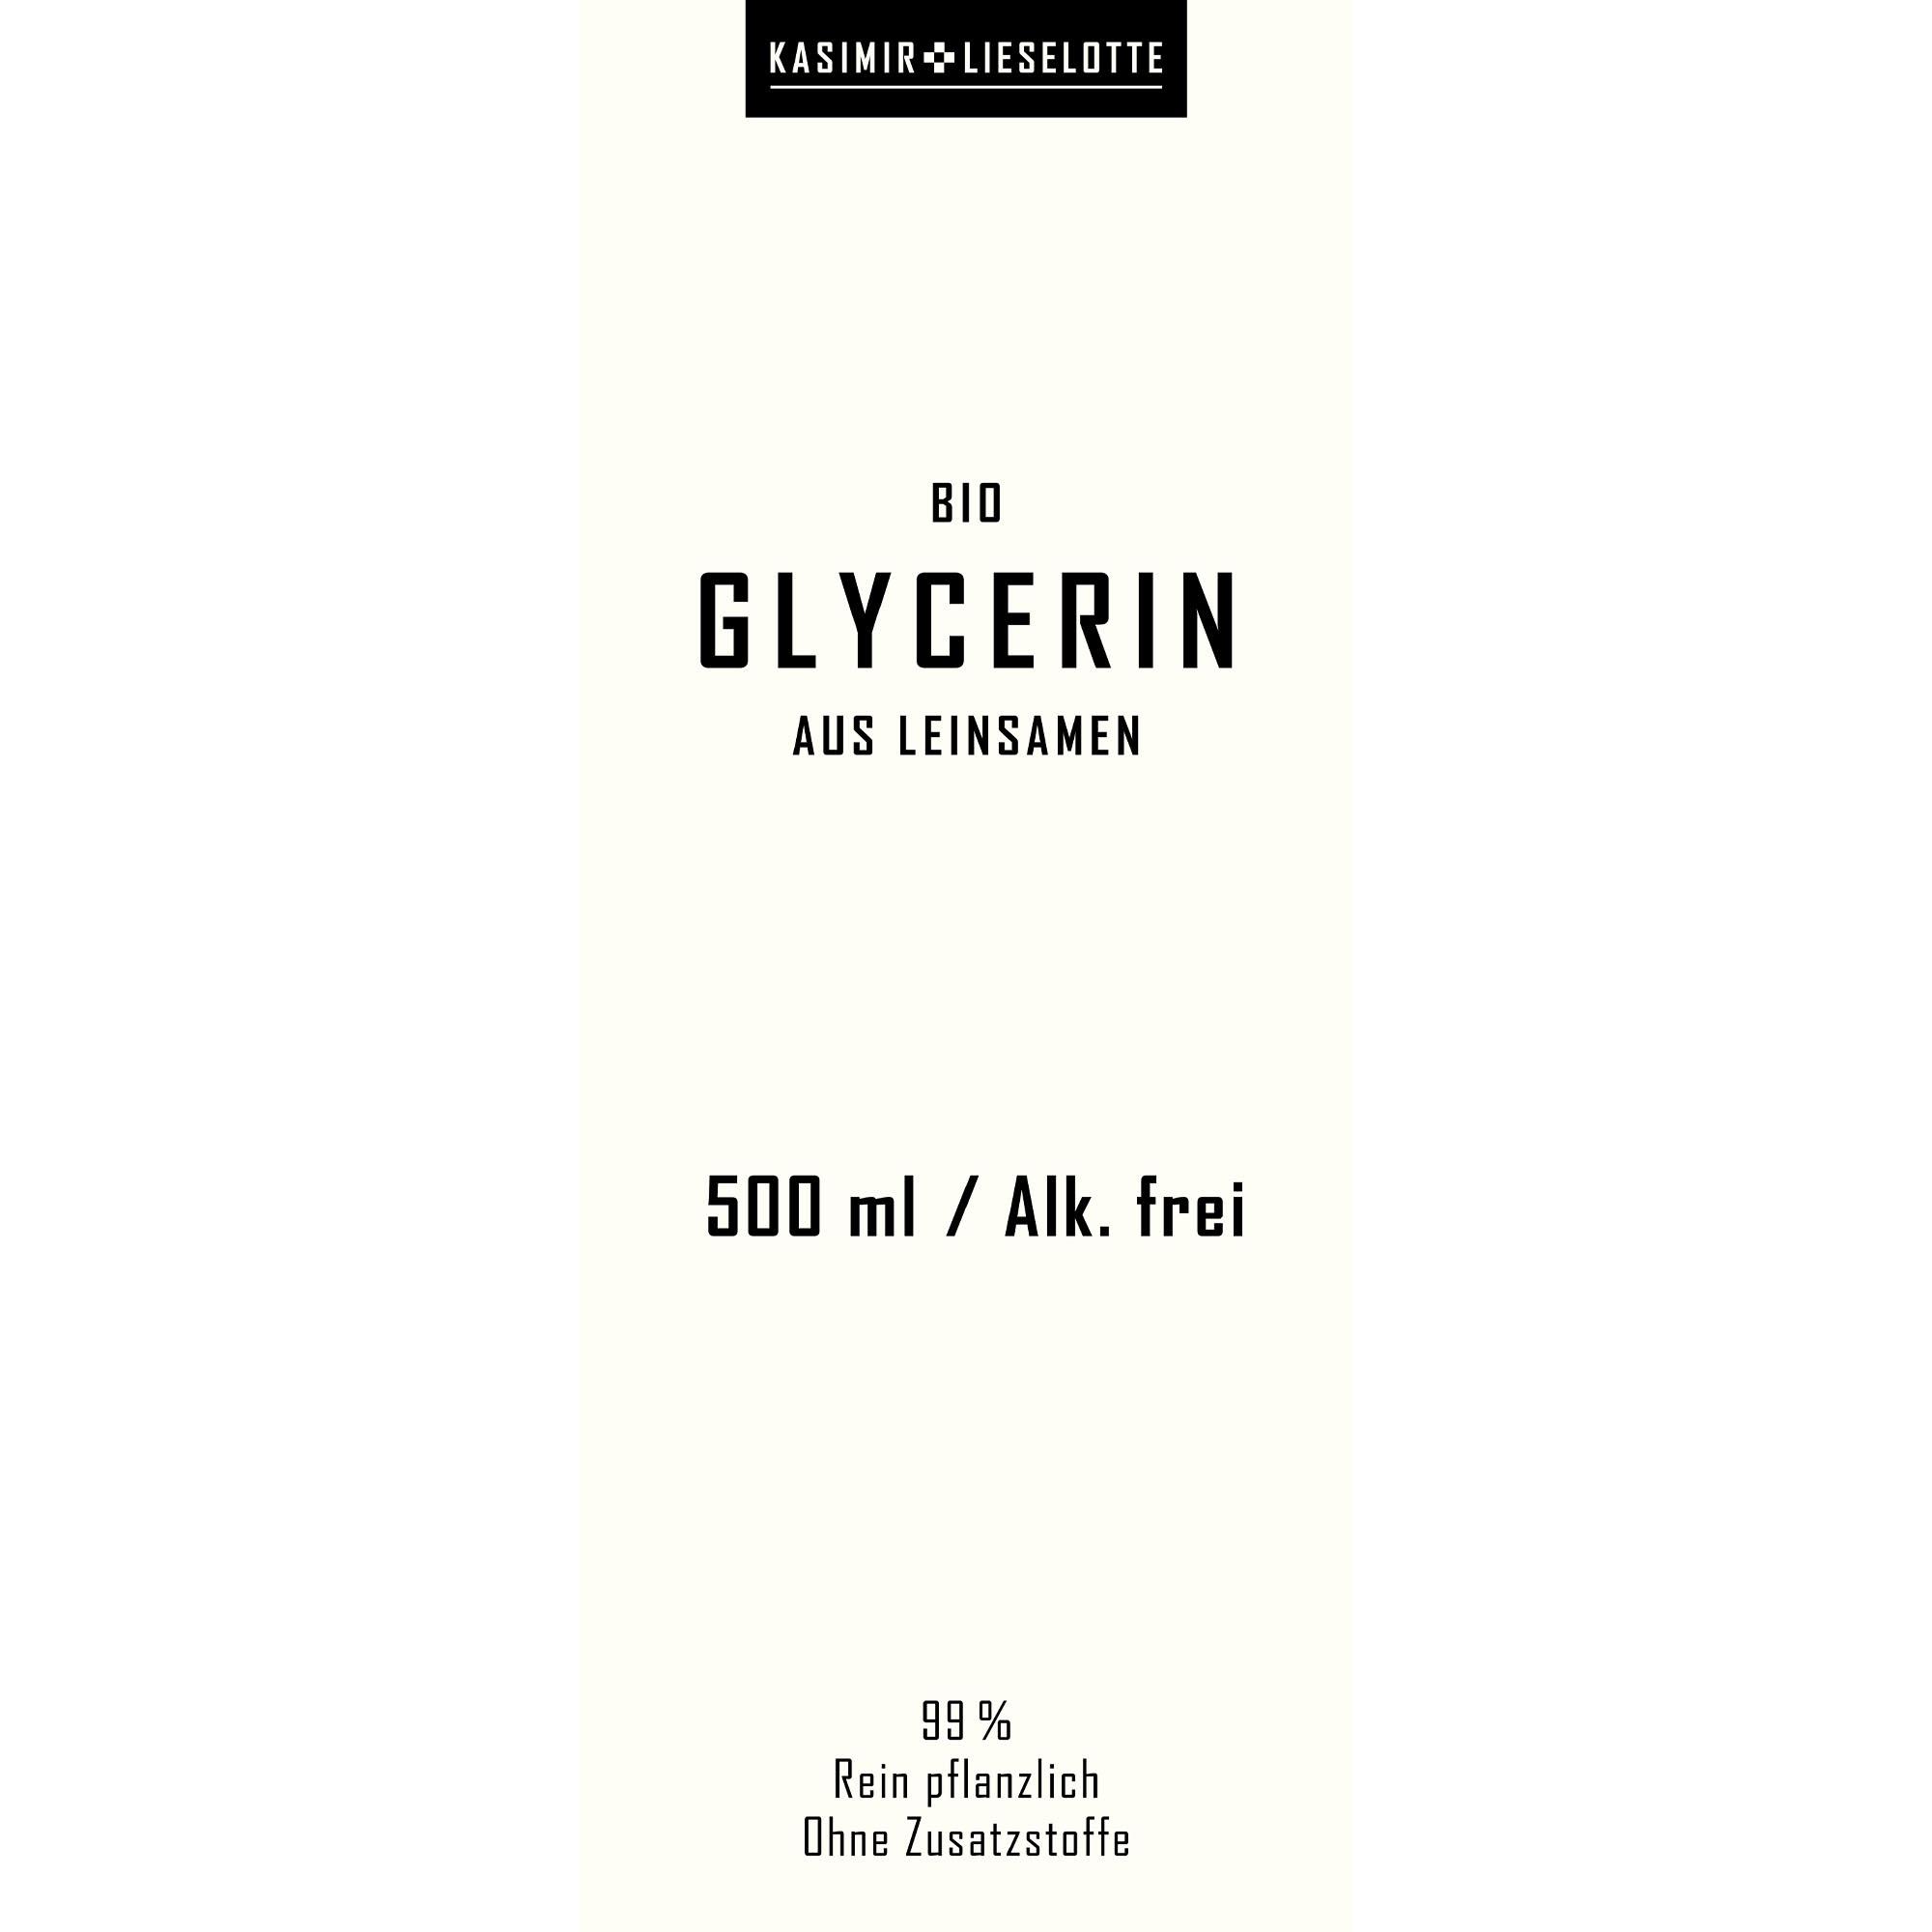 Glycerin pflanzlich aus Bio-Leinsamen 500 ml